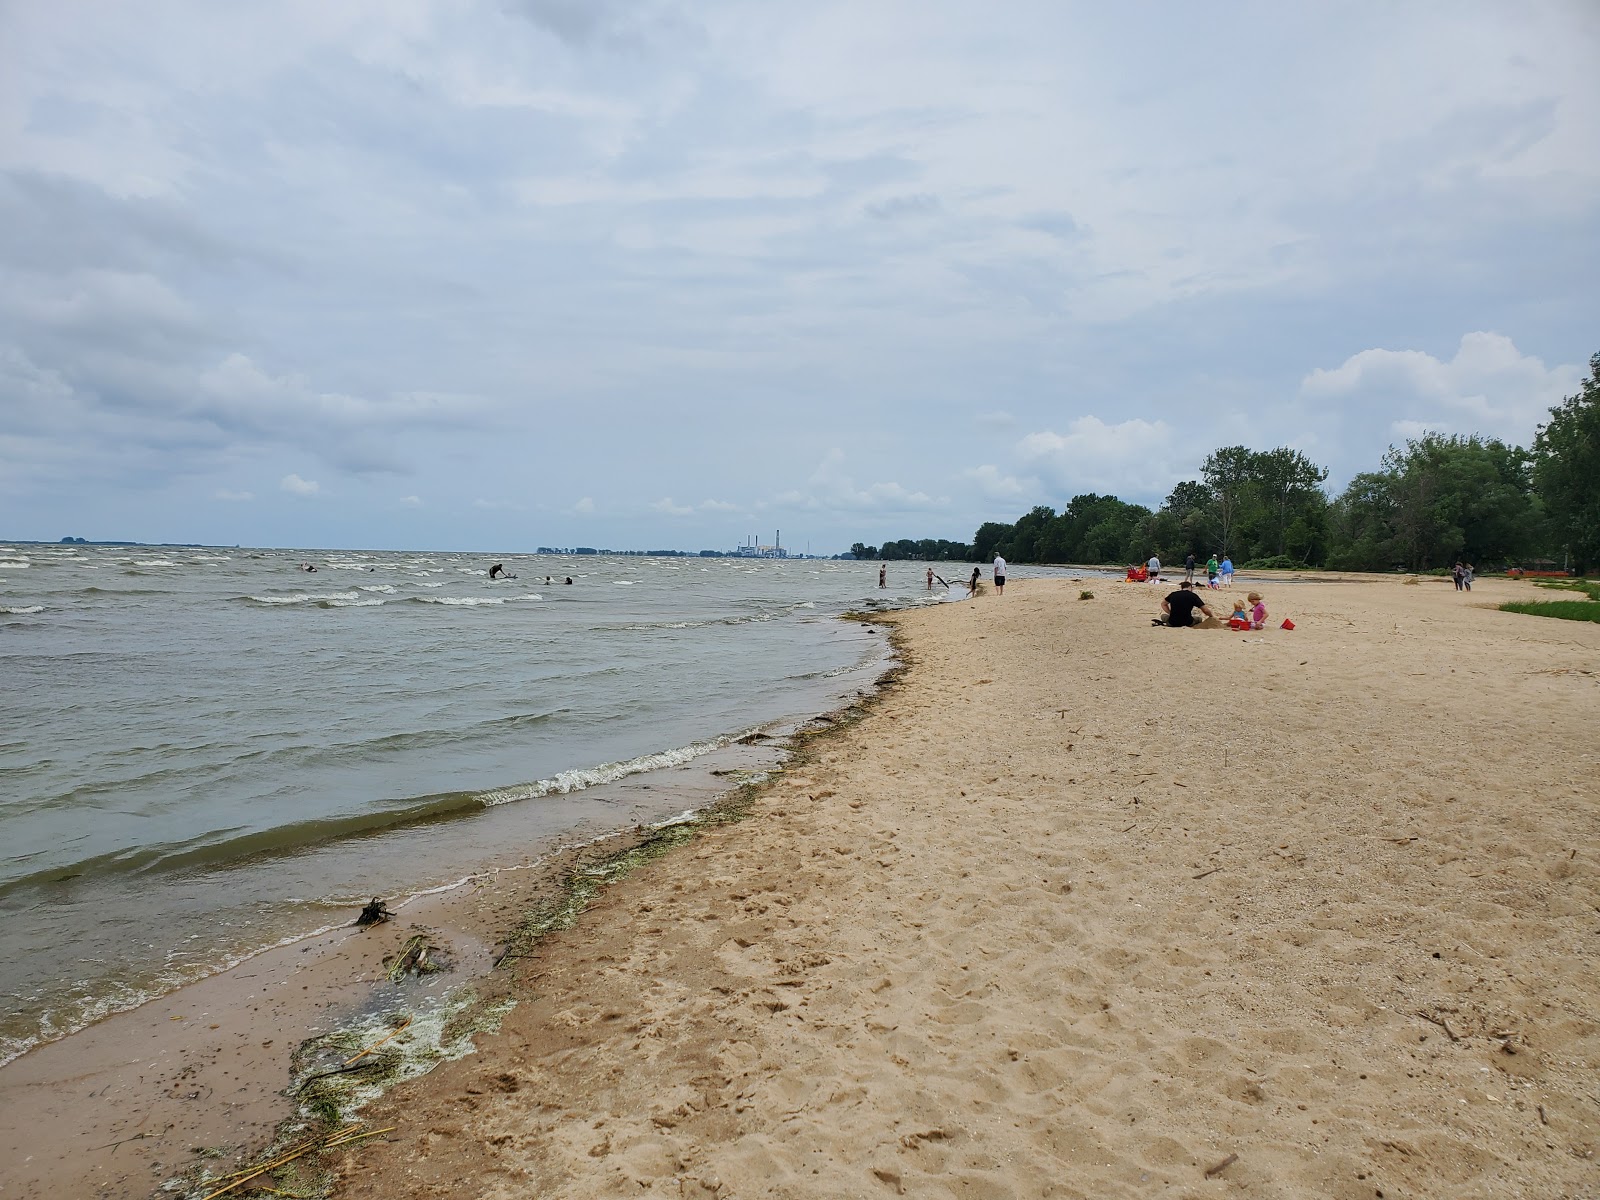 Fotografie cu Bay City State Park Beach - locul popular printre cunoscătorii de relaxare